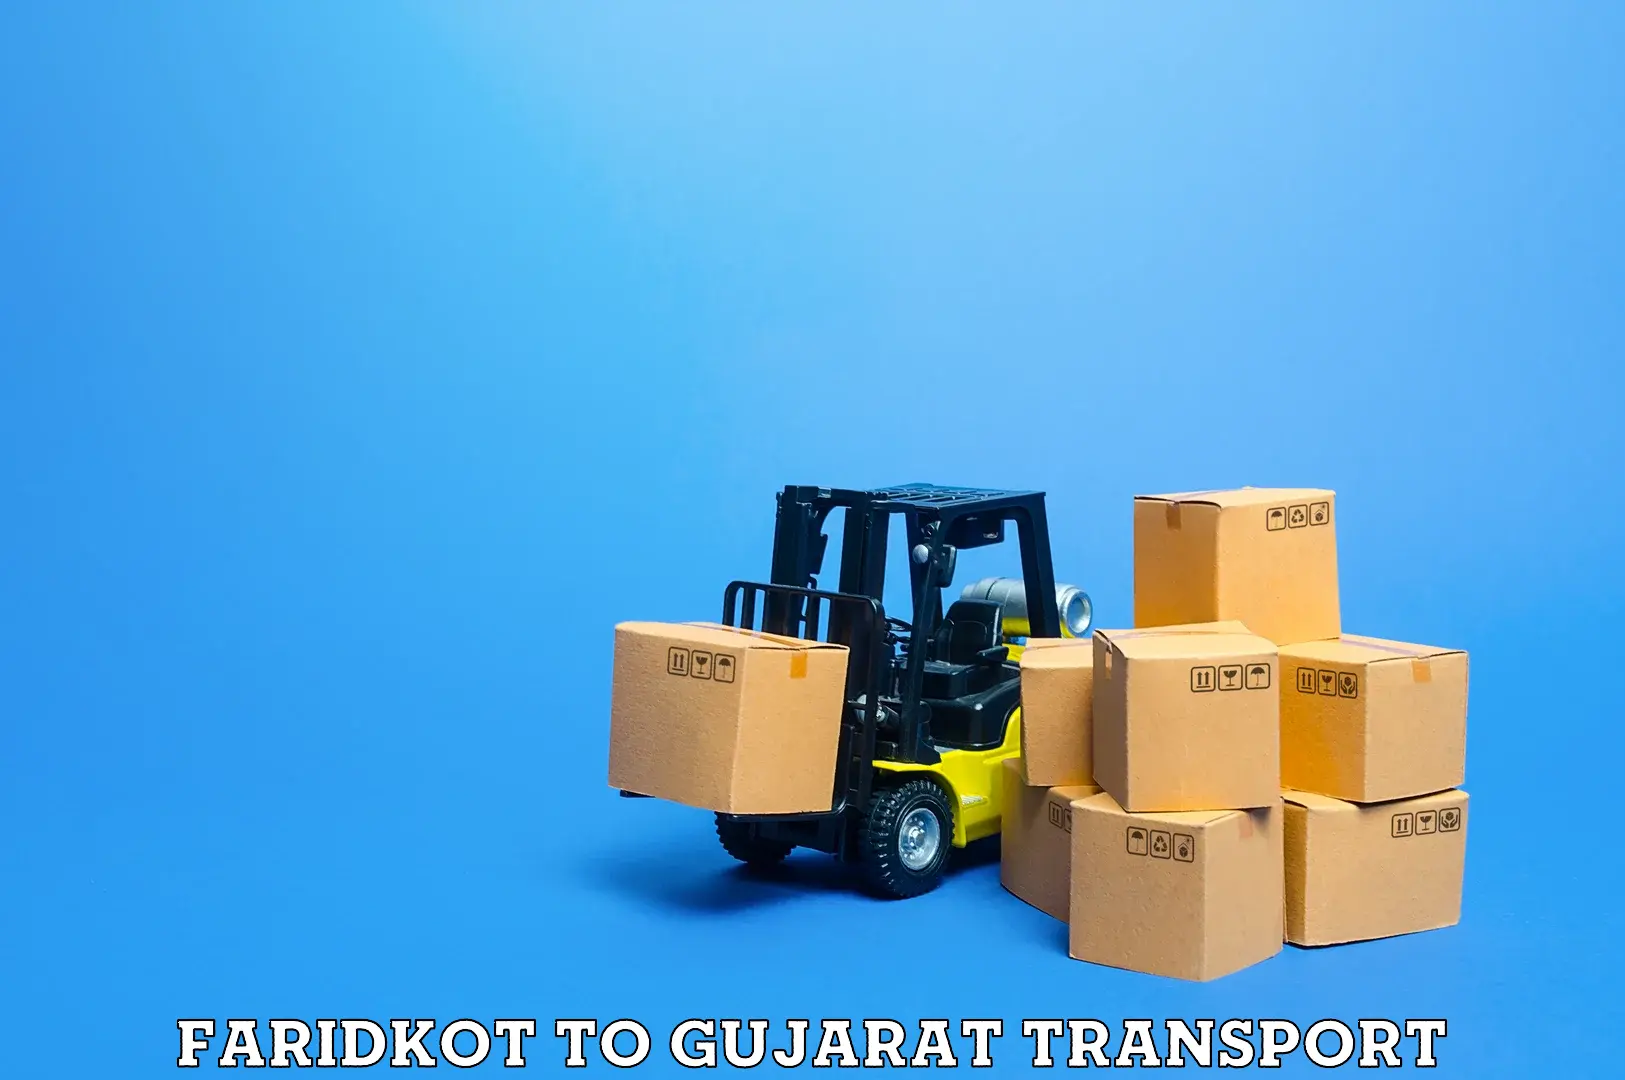 Nearby transport service Faridkot to Gujarat